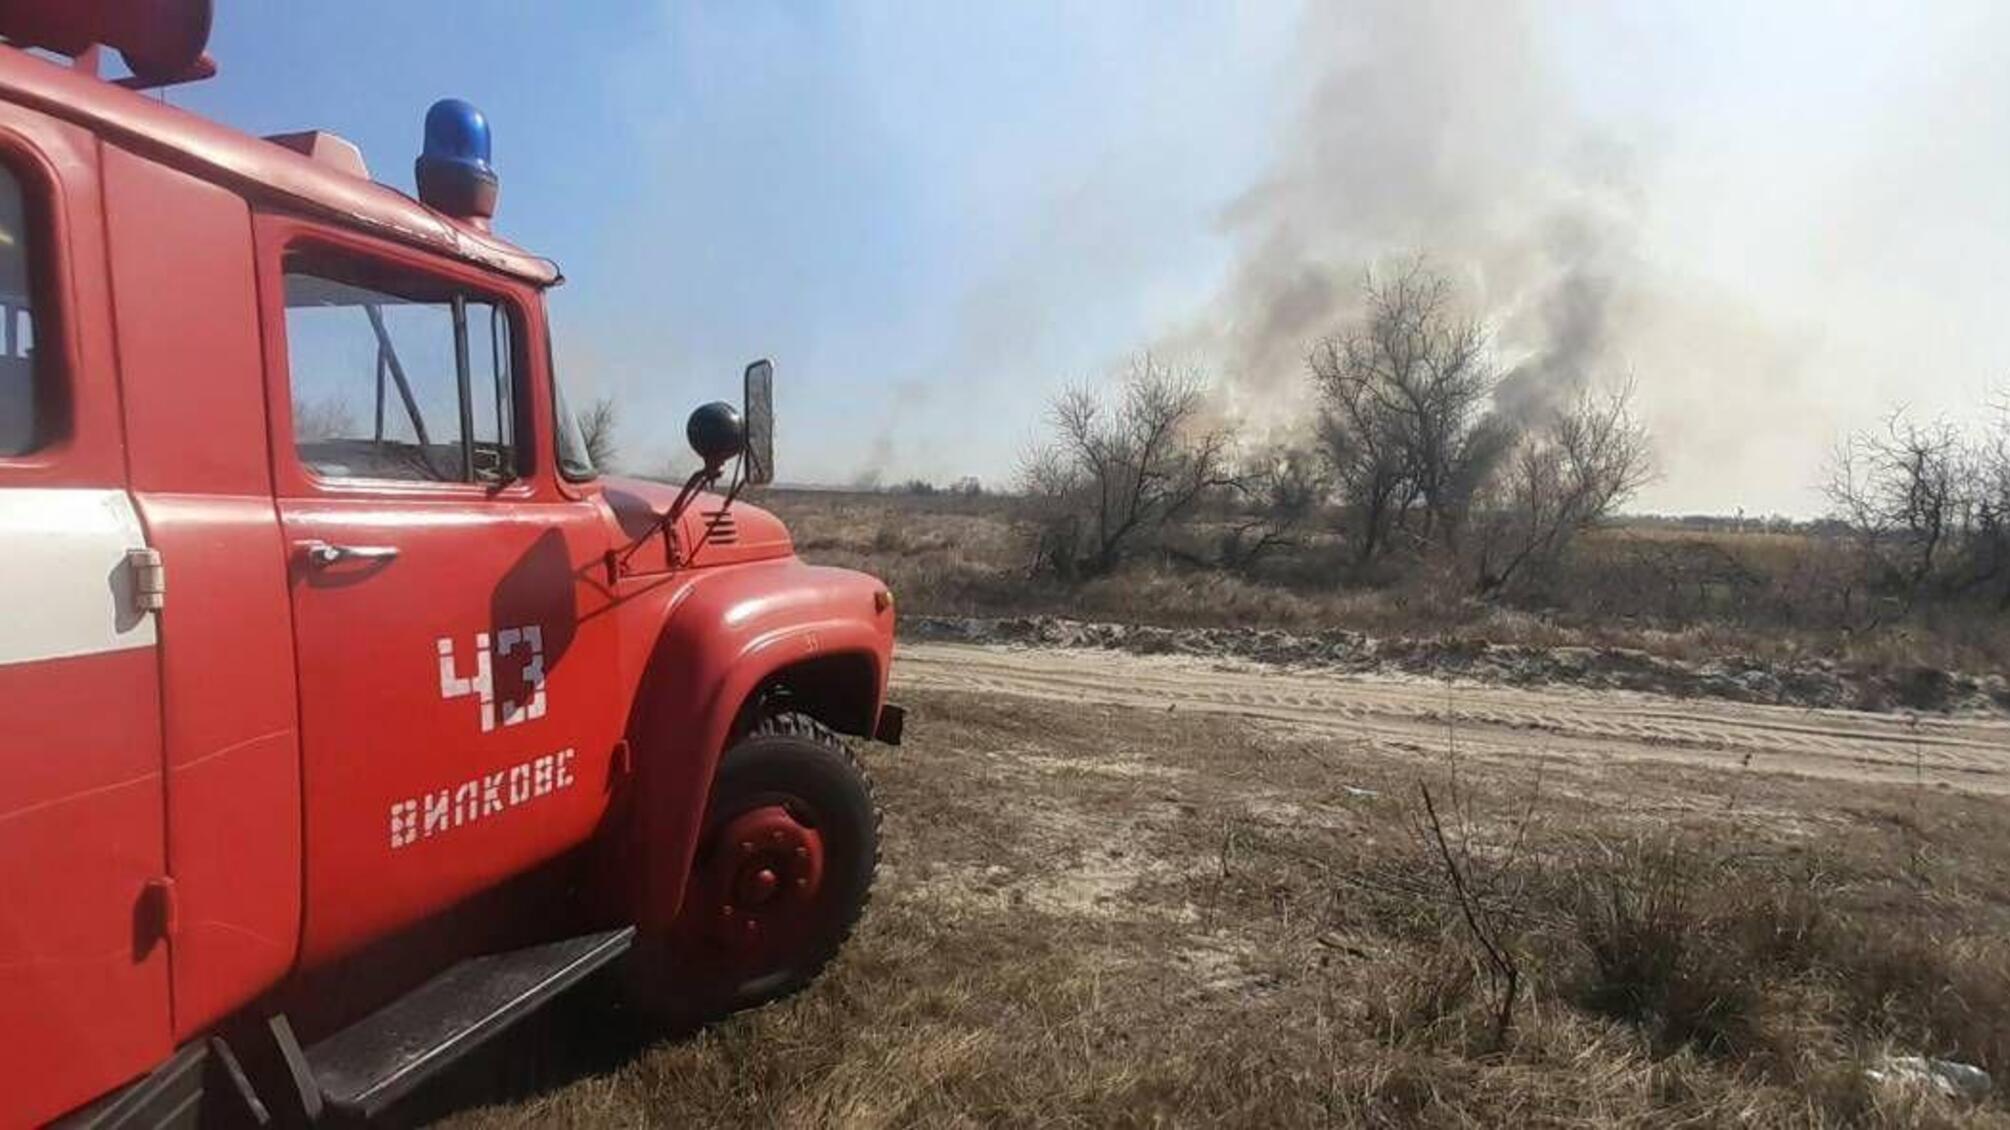 Одеська область: рятувальники ліквідовують загоряння сухої трави